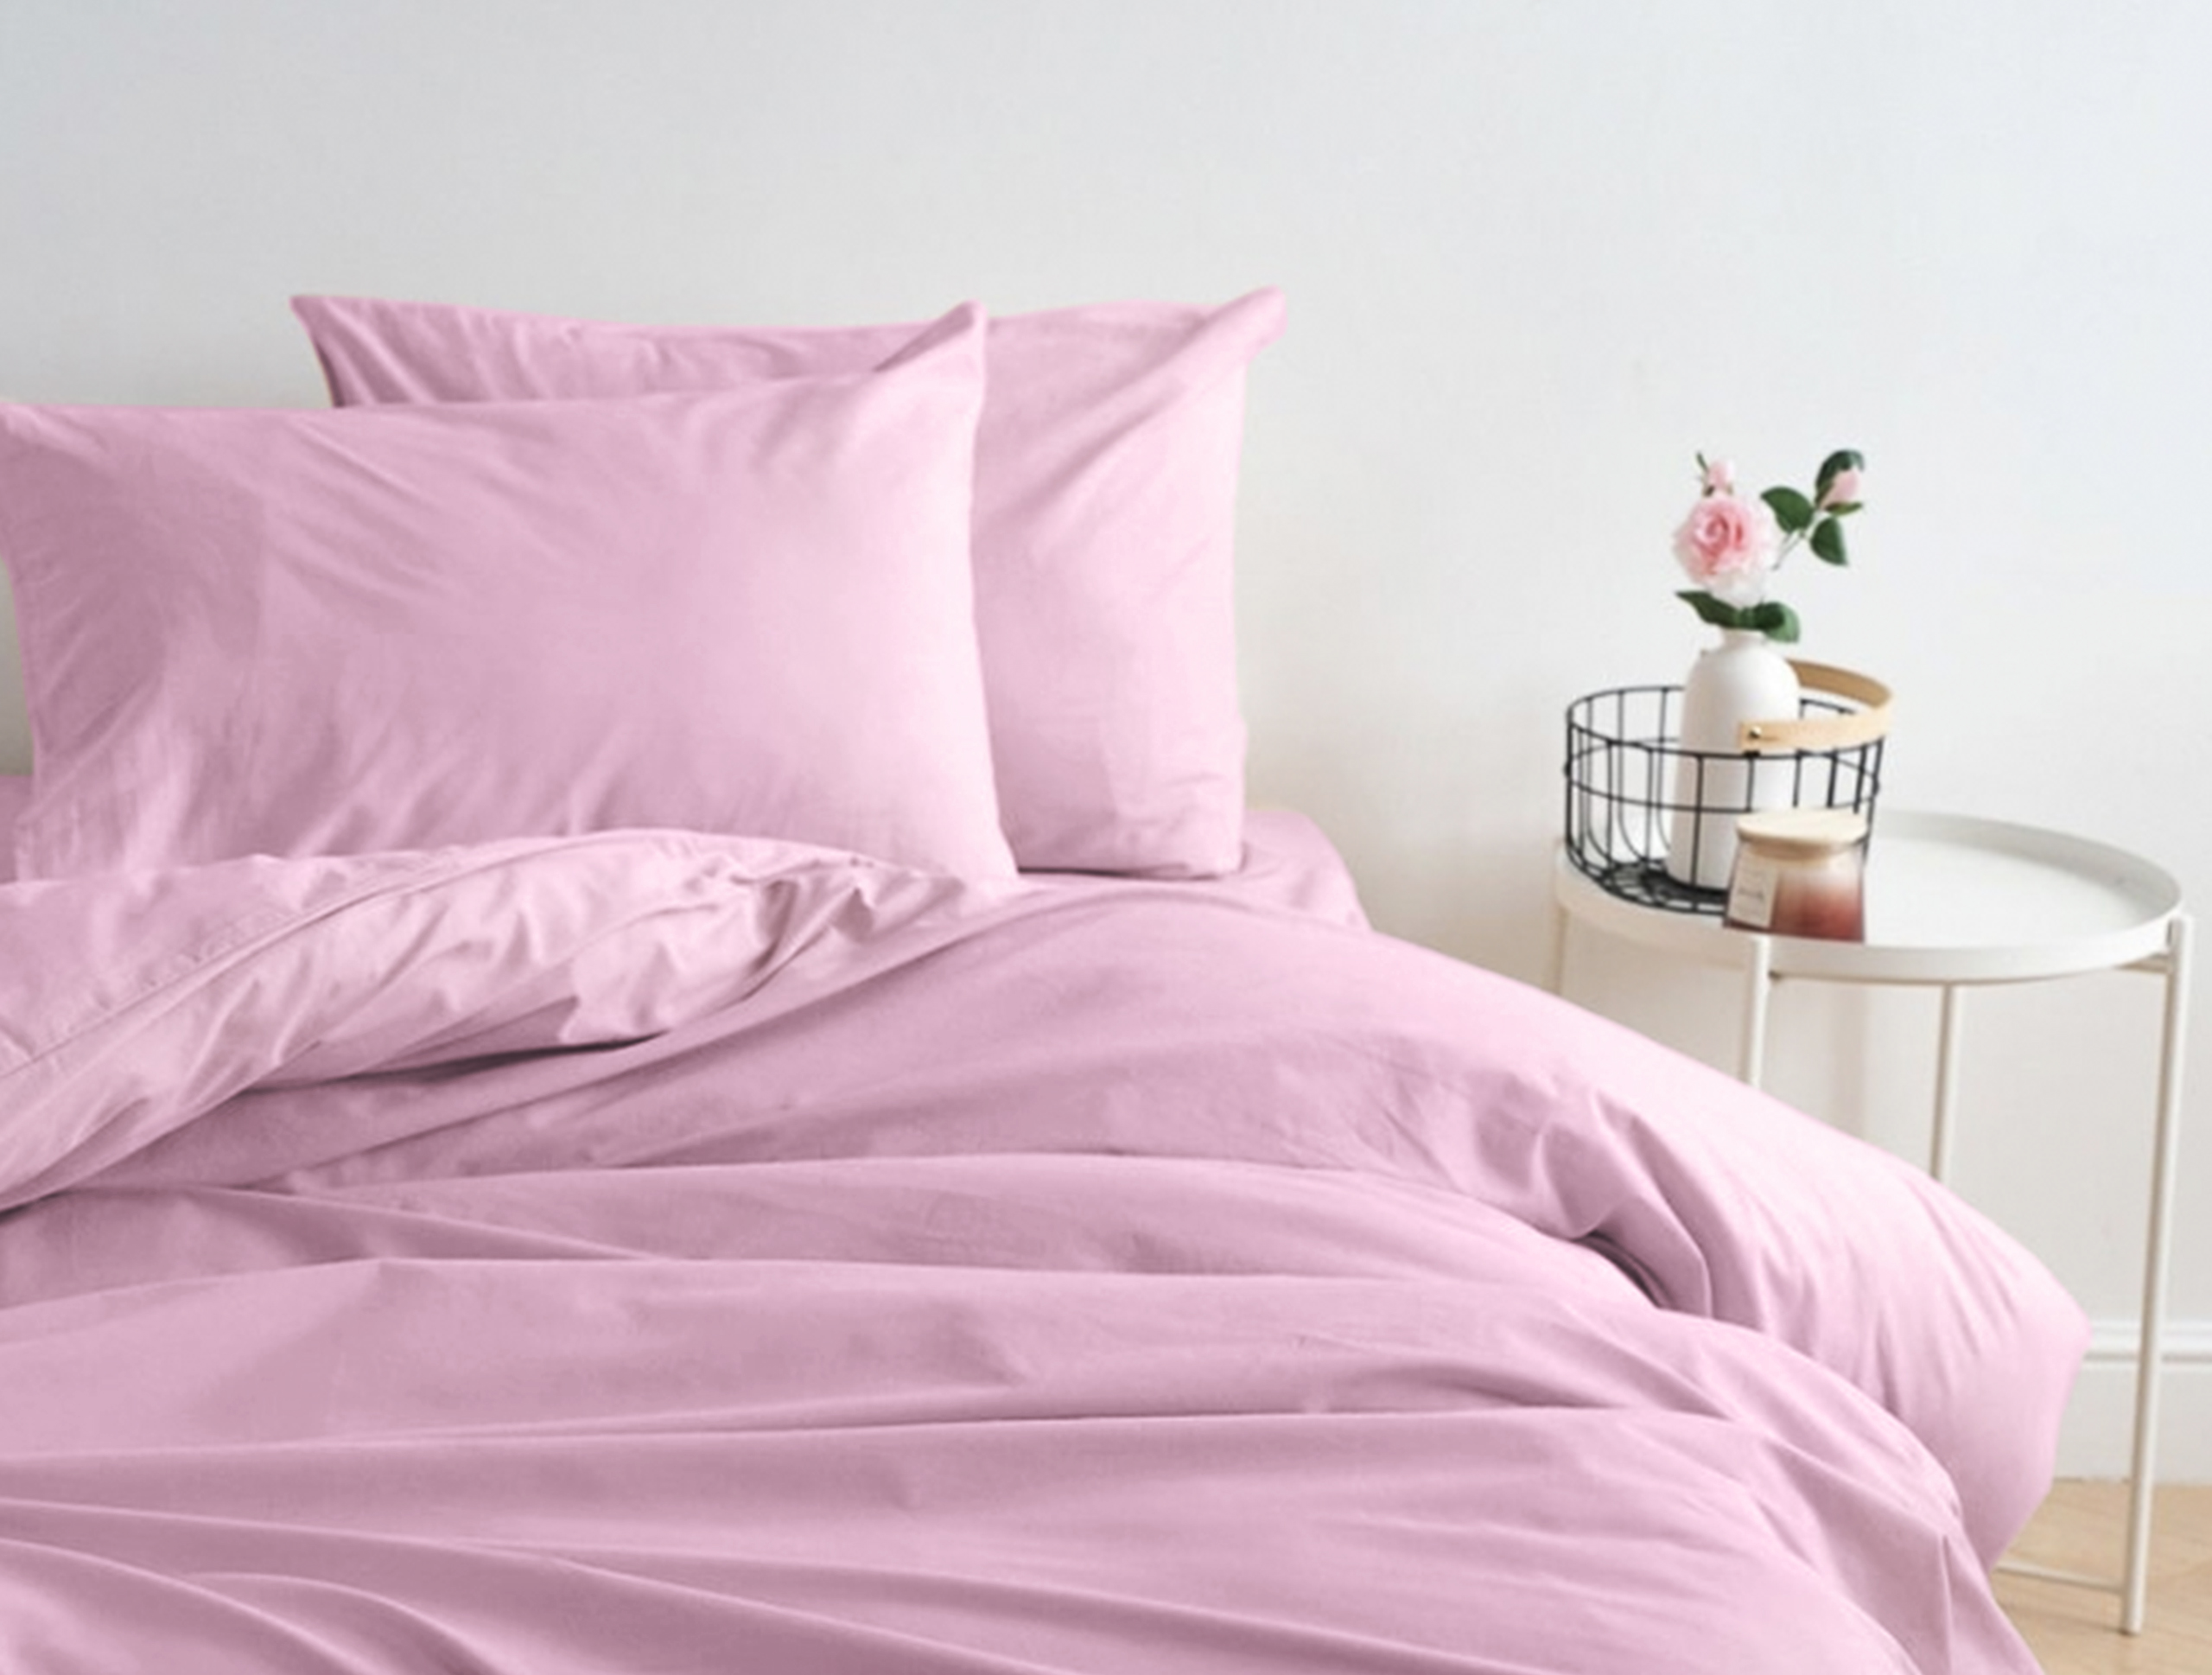 Комплект постельного белья Сатин Розовый - Территория сна